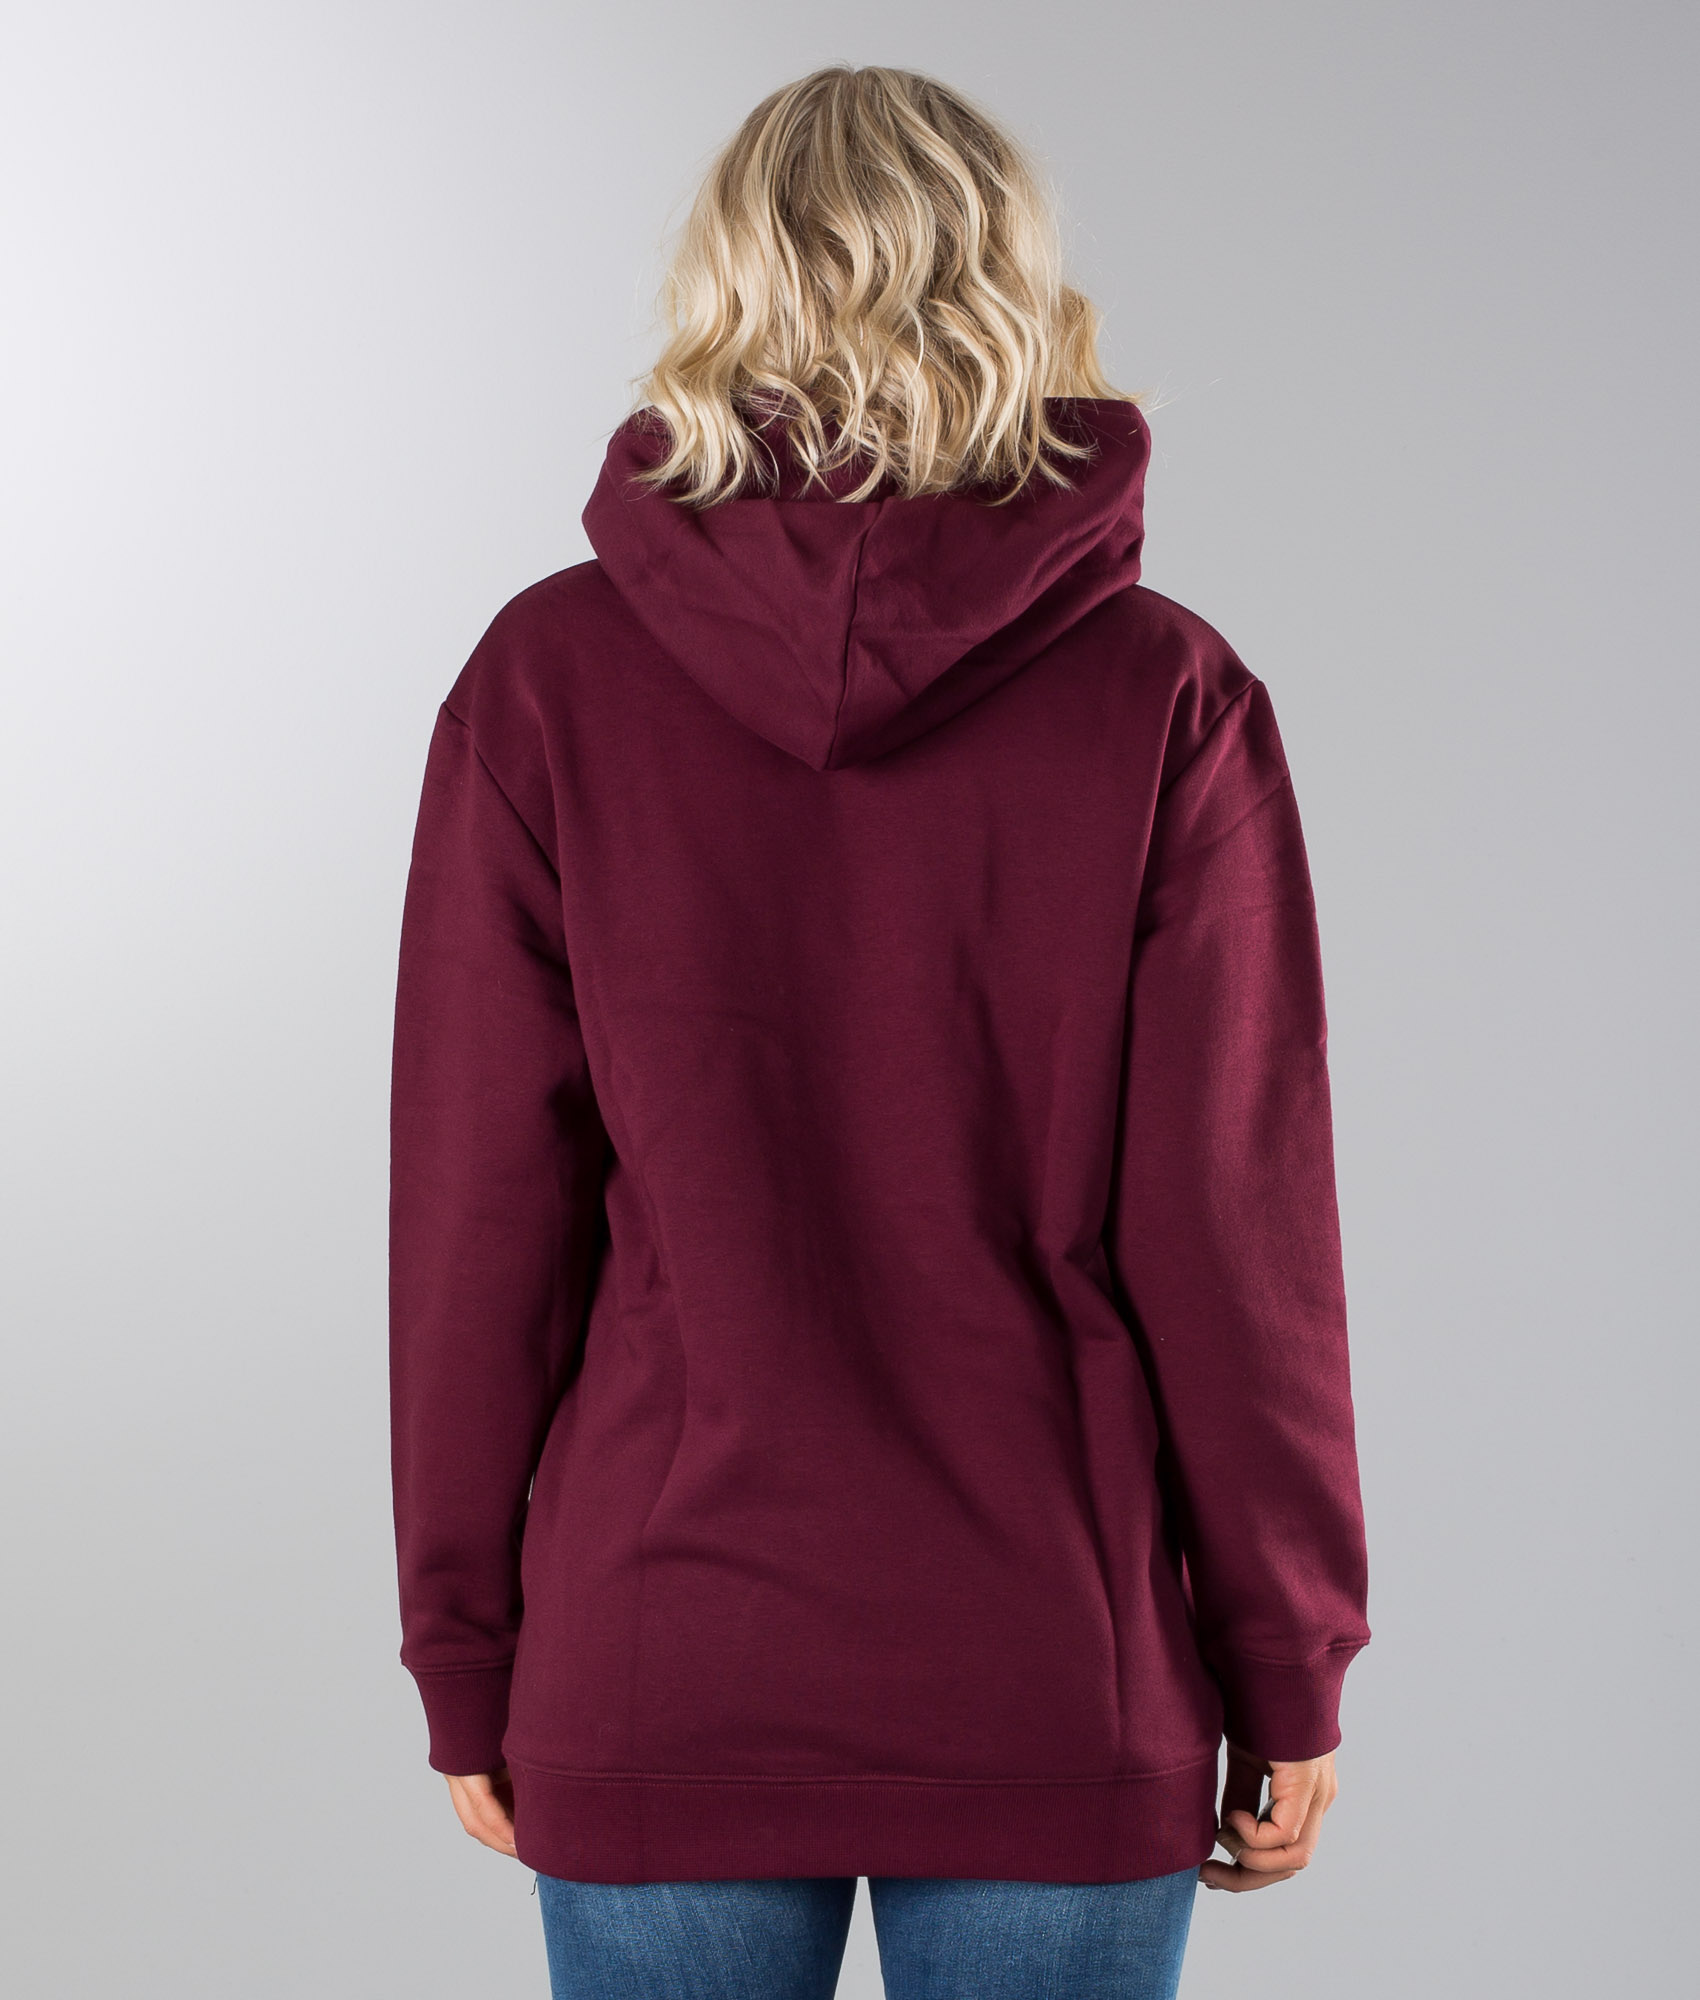 maroon adidas trefoil hoodie